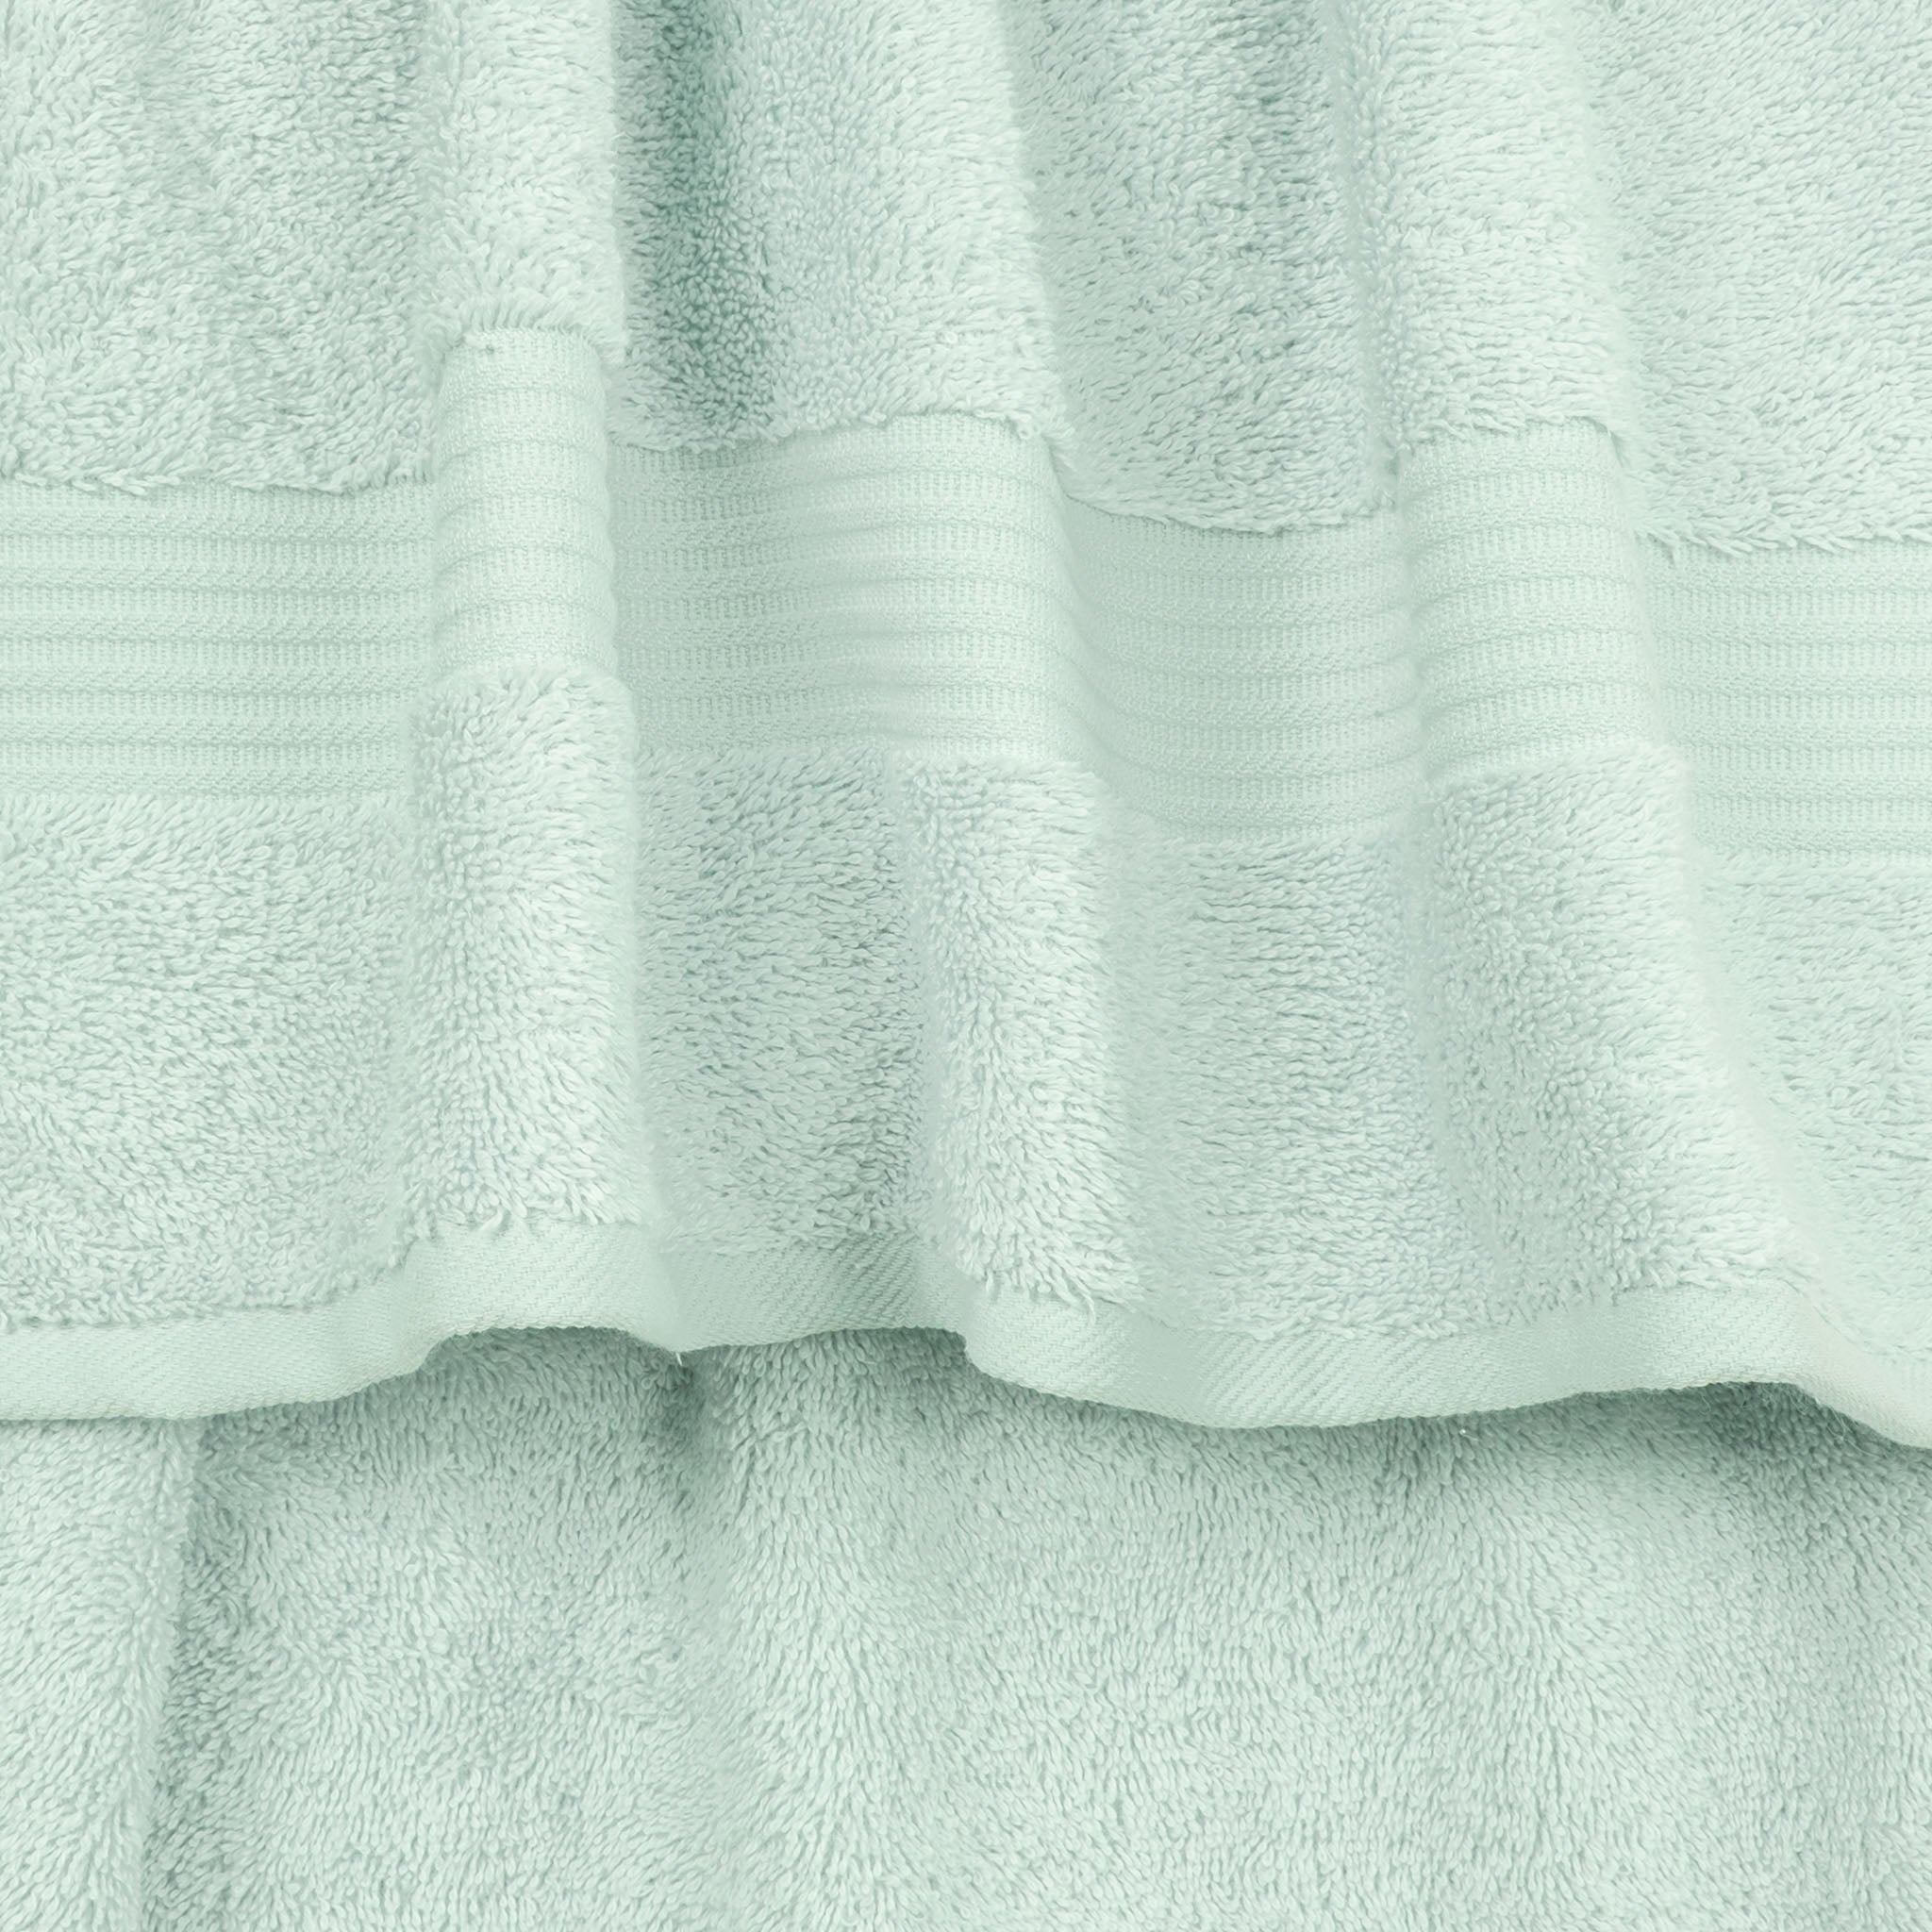 American Soft Linen Bekos 100% Cotton Turkish Towels, 4 Piece Bath Towel Set -mint-03